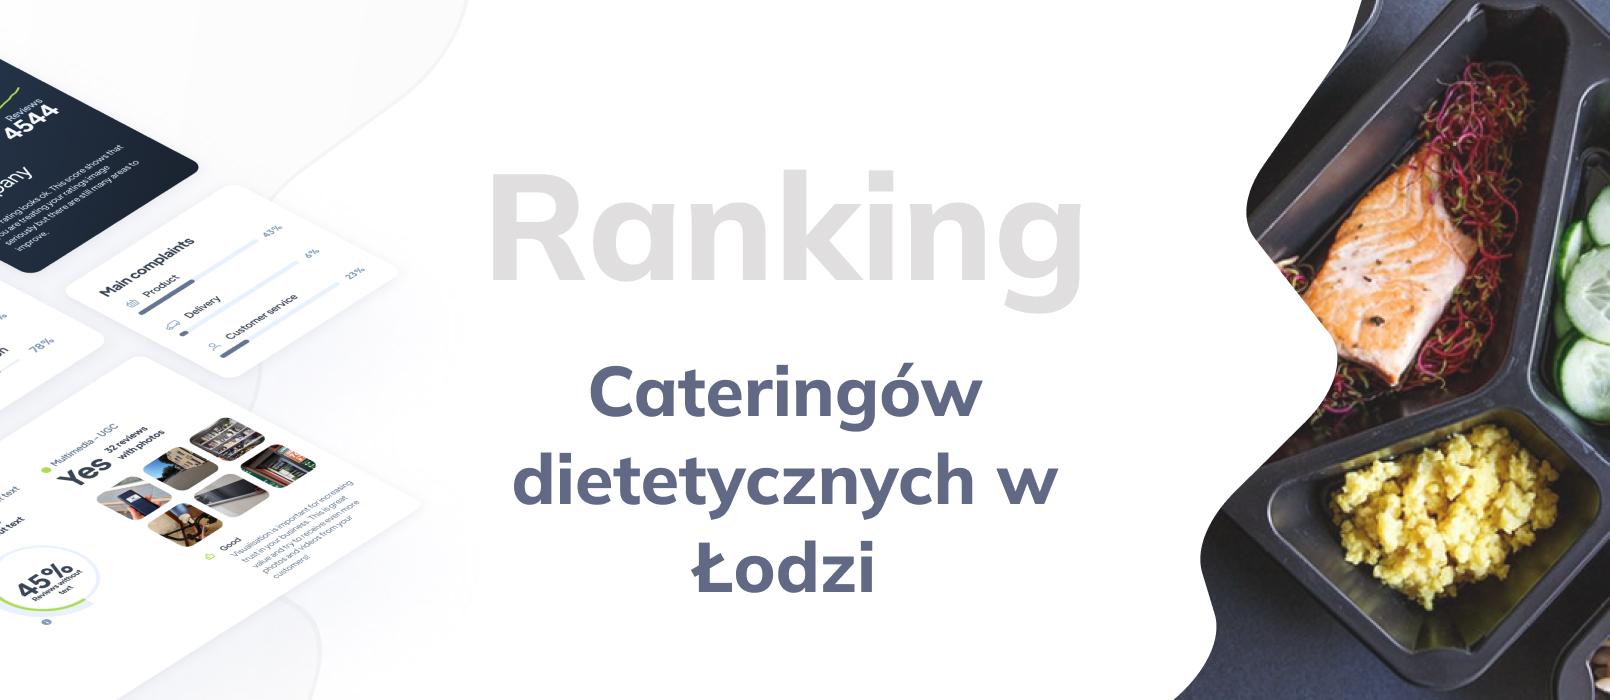 Cateringi dietetyczne w Łodzi - ranking  TOP 10 